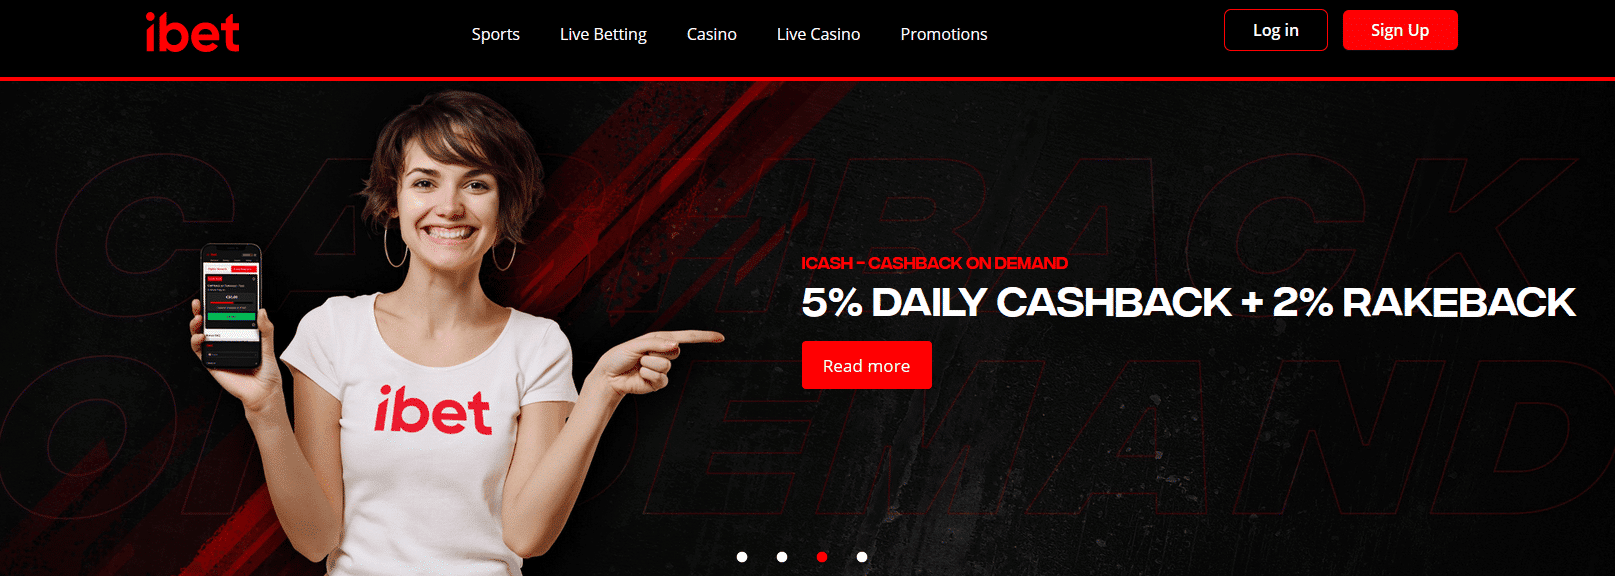 ibet online casino bonus header